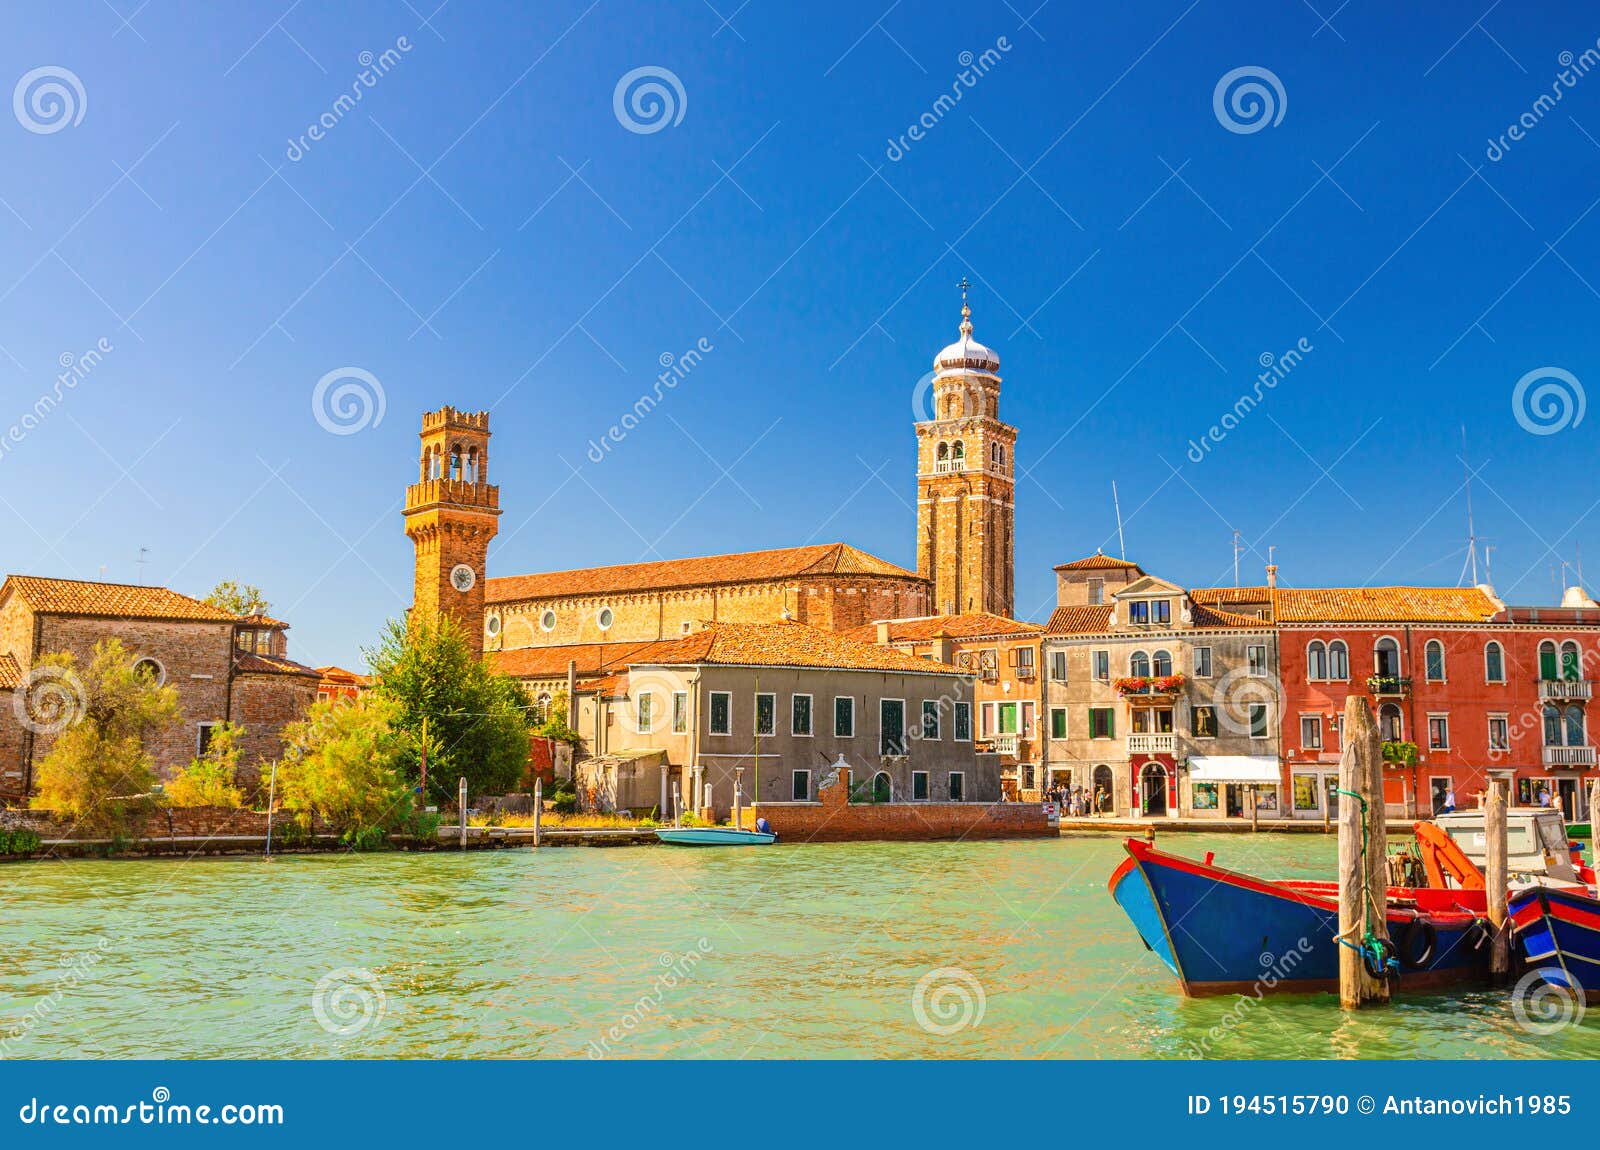 murano islands cityscape with clock tower torre dell`orologio